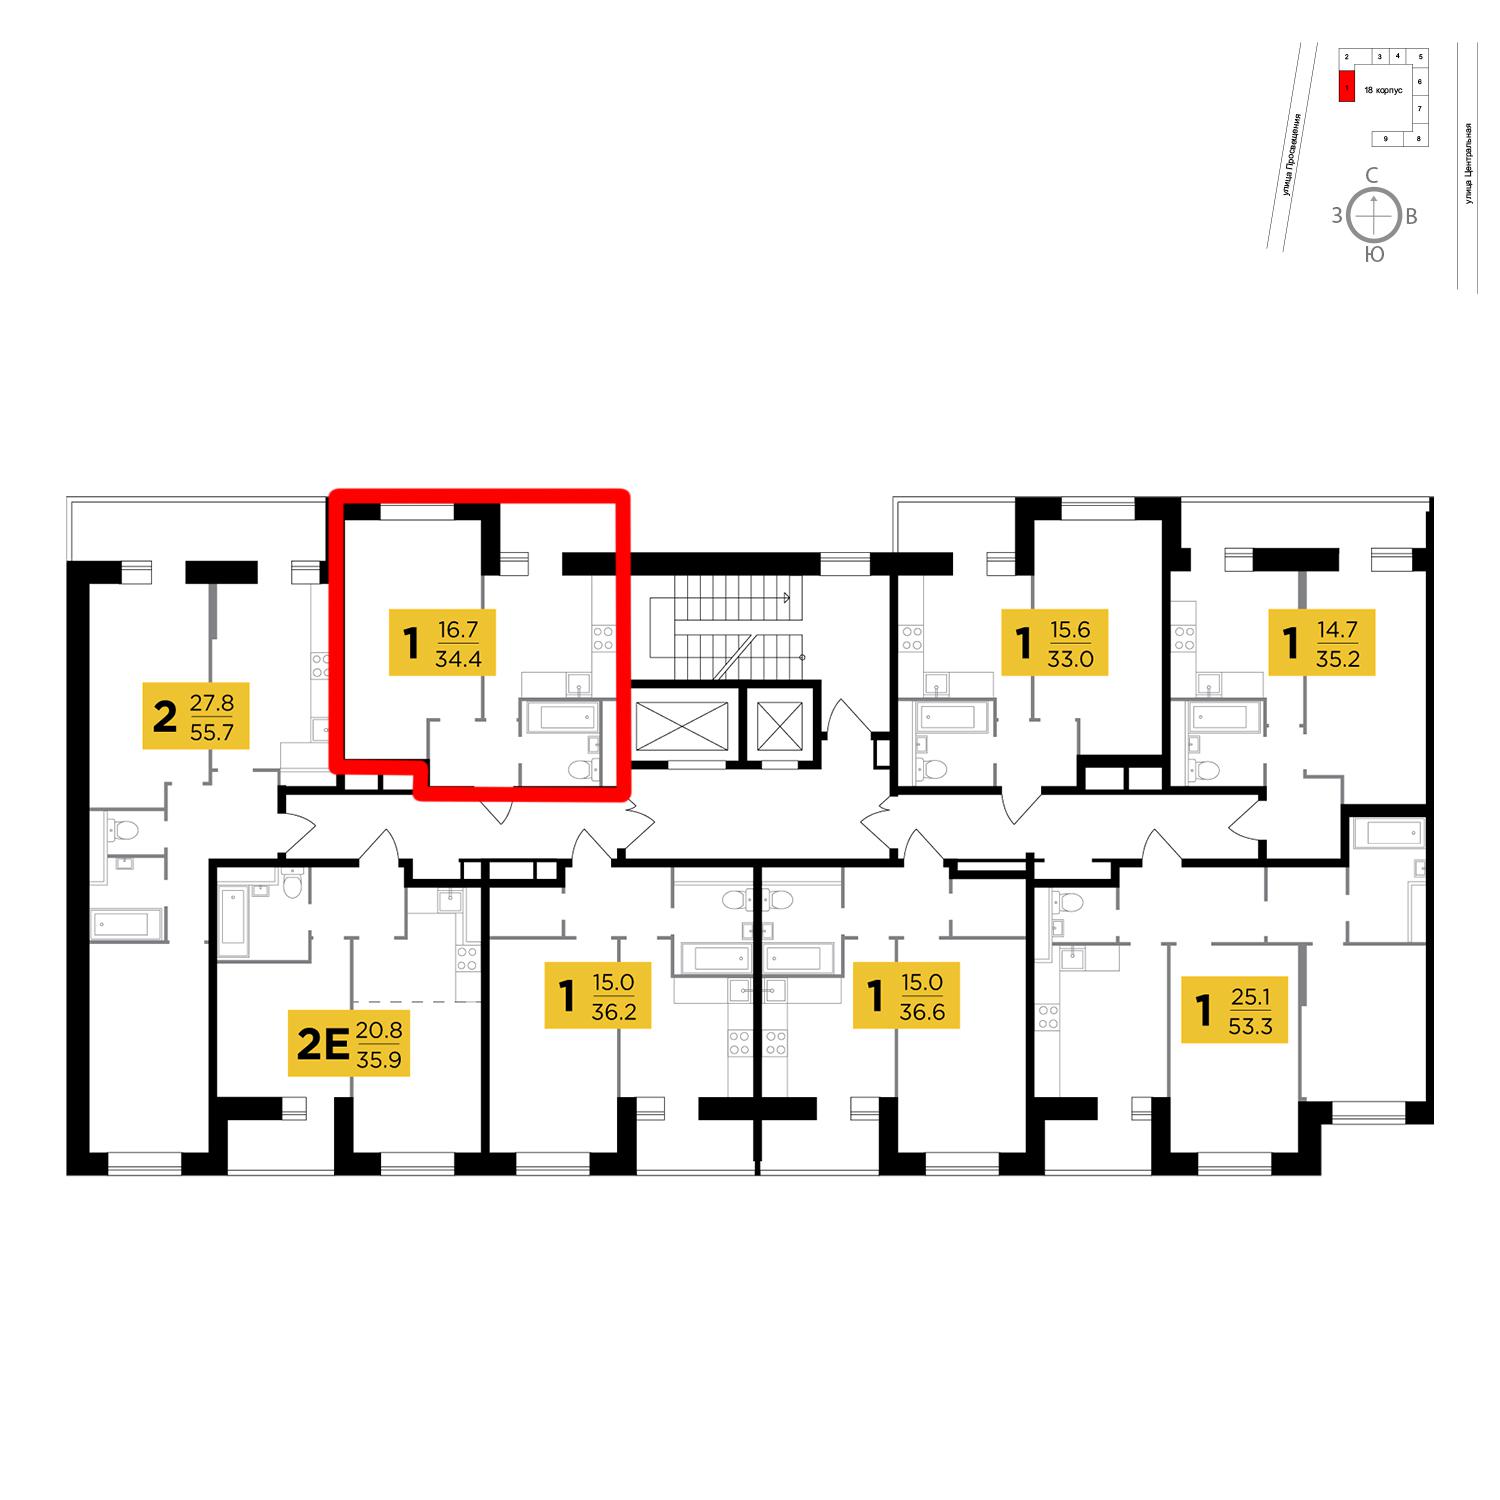 Продаётся 1-комнатная квартира в новостройке 34.4 кв.м. этаж 12/16 за 2 658 604 руб 